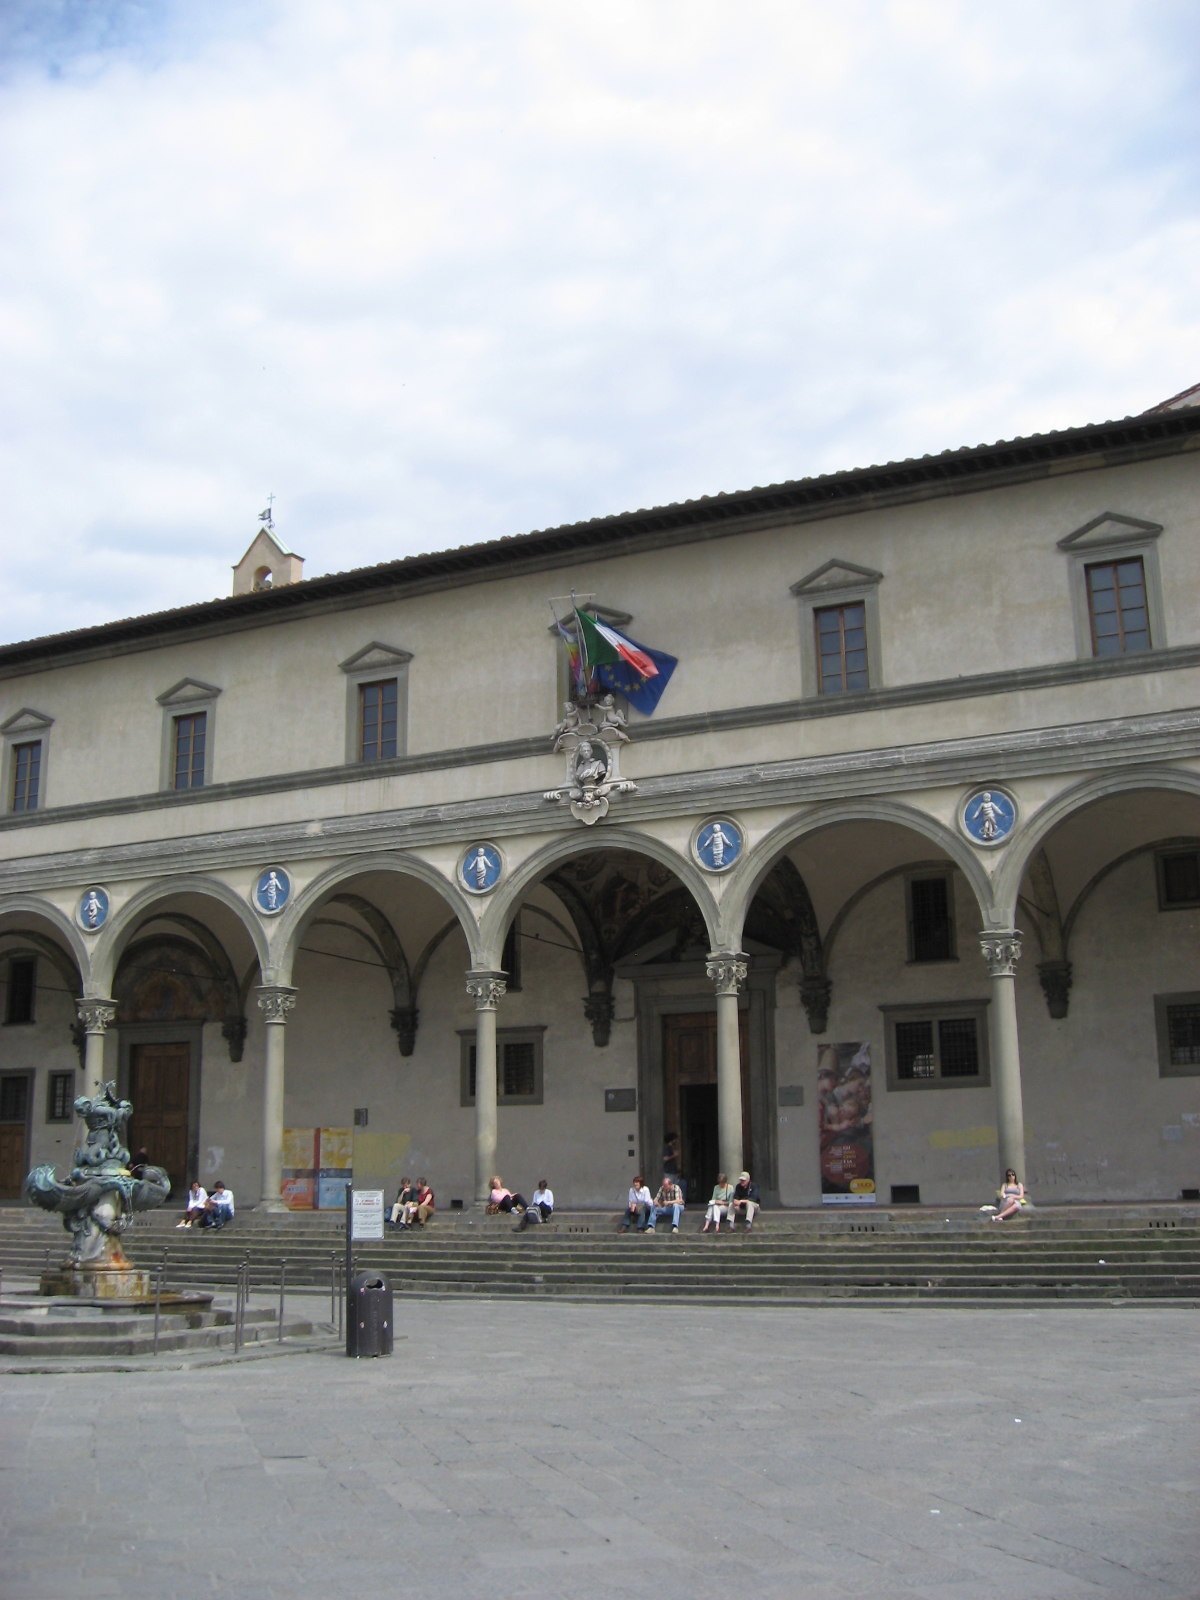 Piazza SS Annunziata Firenze Apr 2008 (3).JPG пример архитектуры итальянского Возрождения Брунеллески